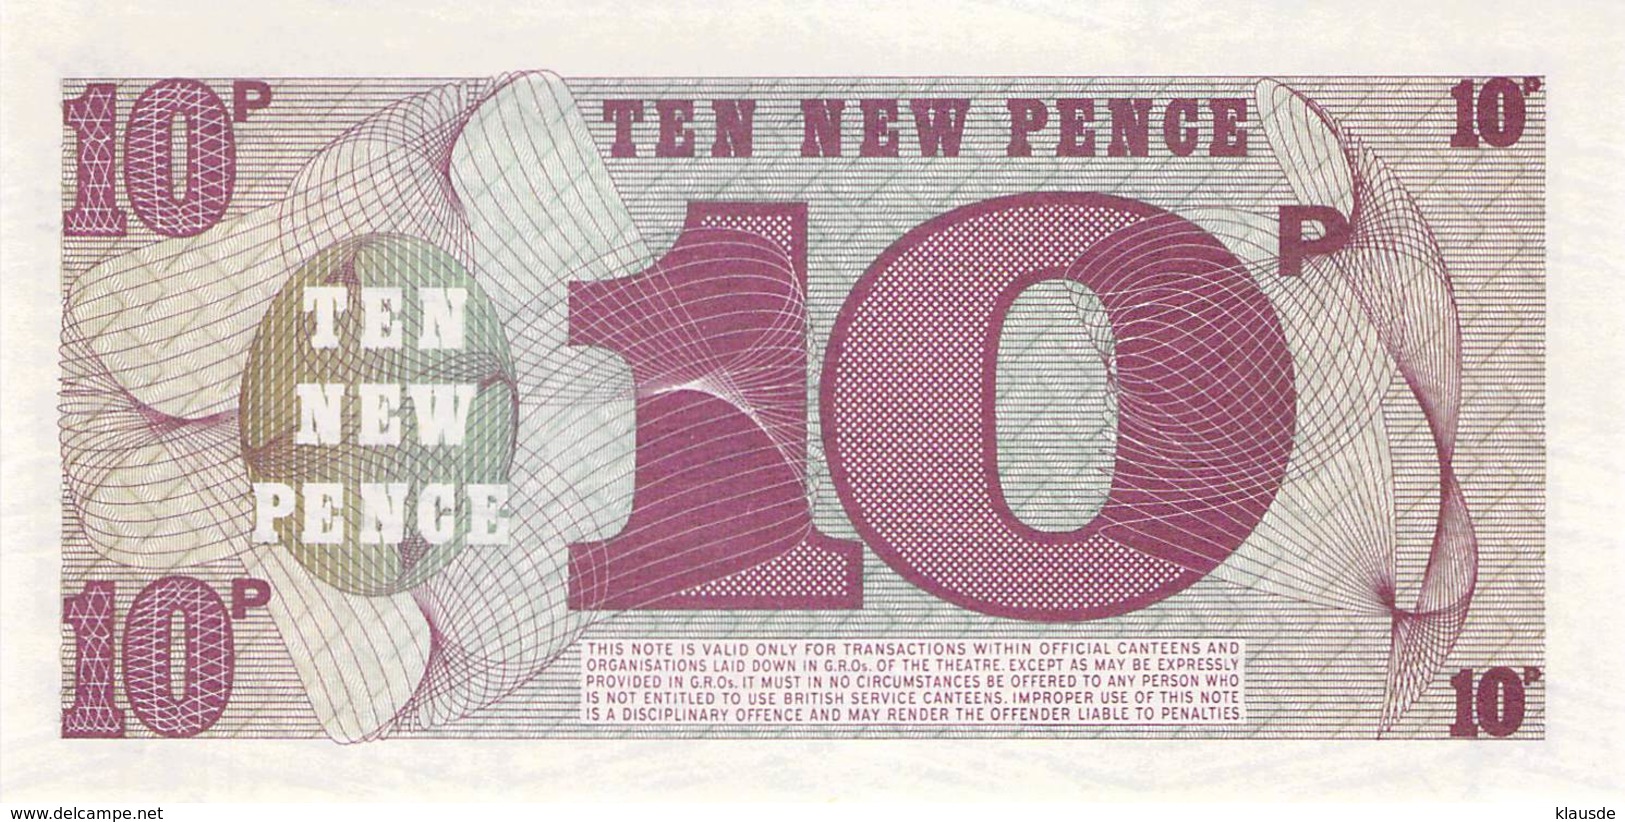 10 Ten New Pence UNC - Forze Armate Britanniche & Docuementi Speciali